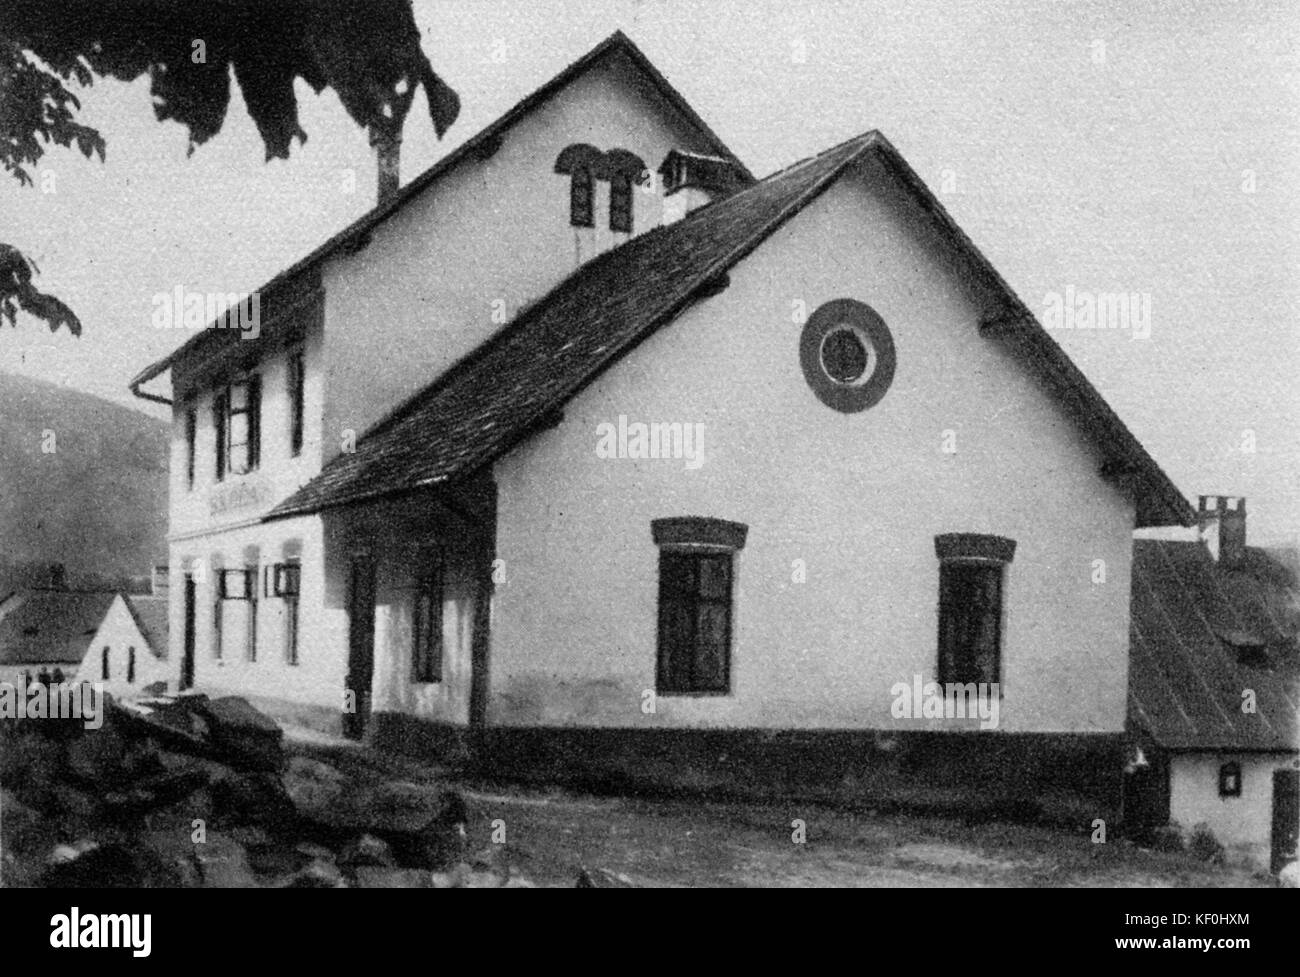 L'École de Hukvaldy, berceau de Leos Janacek. Compositeur tchèque, 13 juillet 1854 - 12 août 1928. Banque D'Images